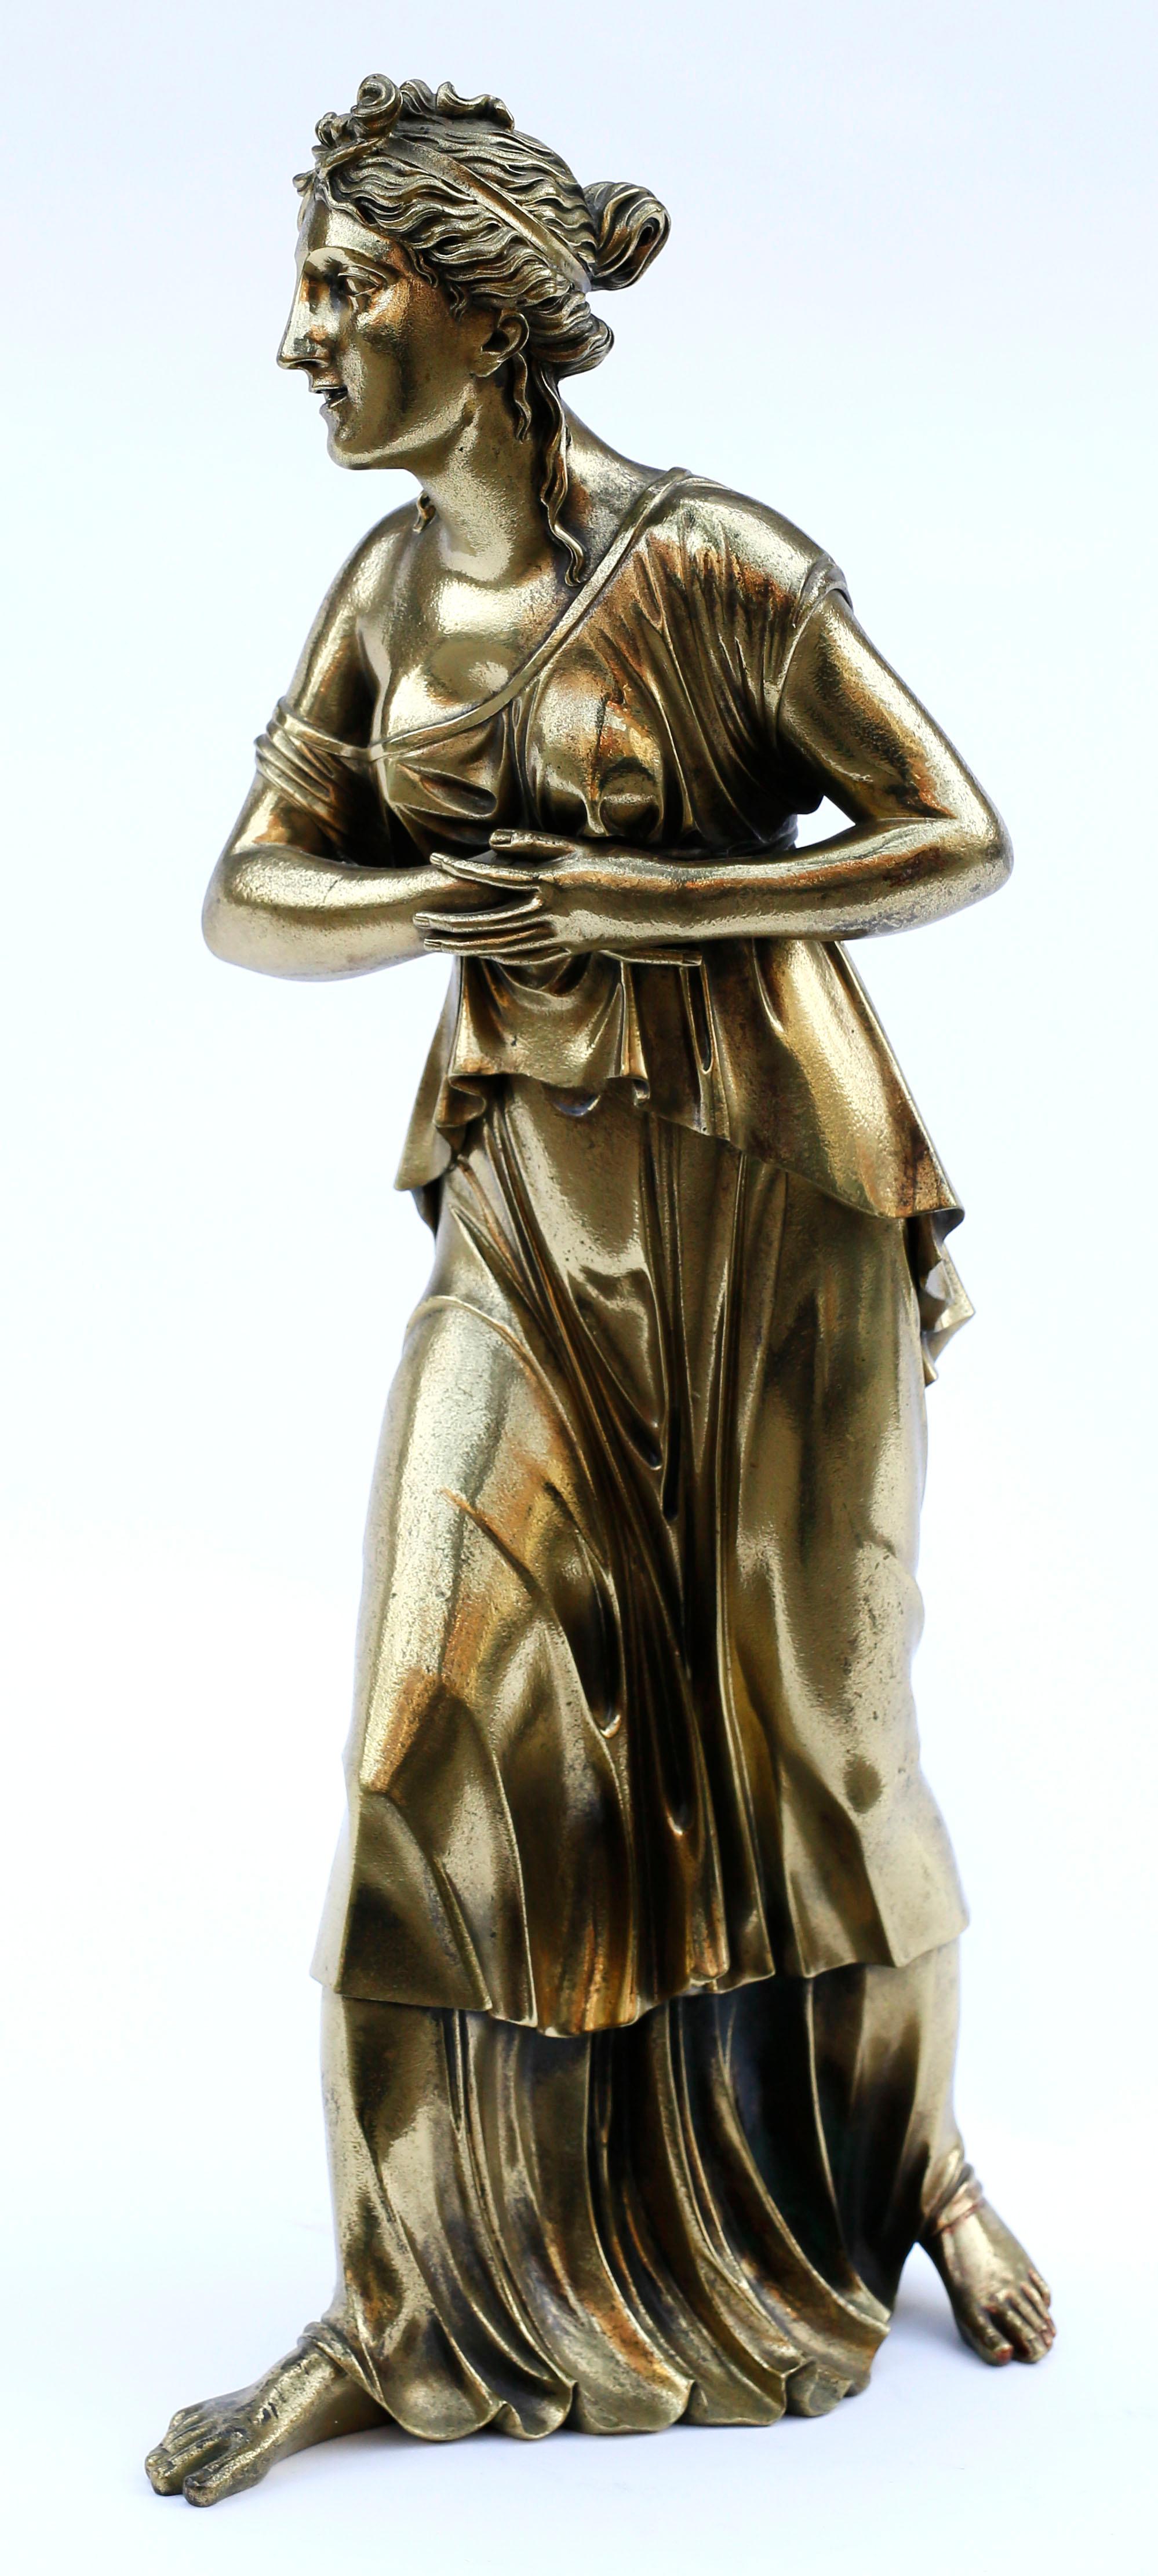 Une magistrale grande statue classique en bronze coulé représentant une belle jeune femme portant un chiton ionique fluide. Le moulage exquis des détails de la chevelure de la femme et des robes profondément pliées font de cette pièce un objet